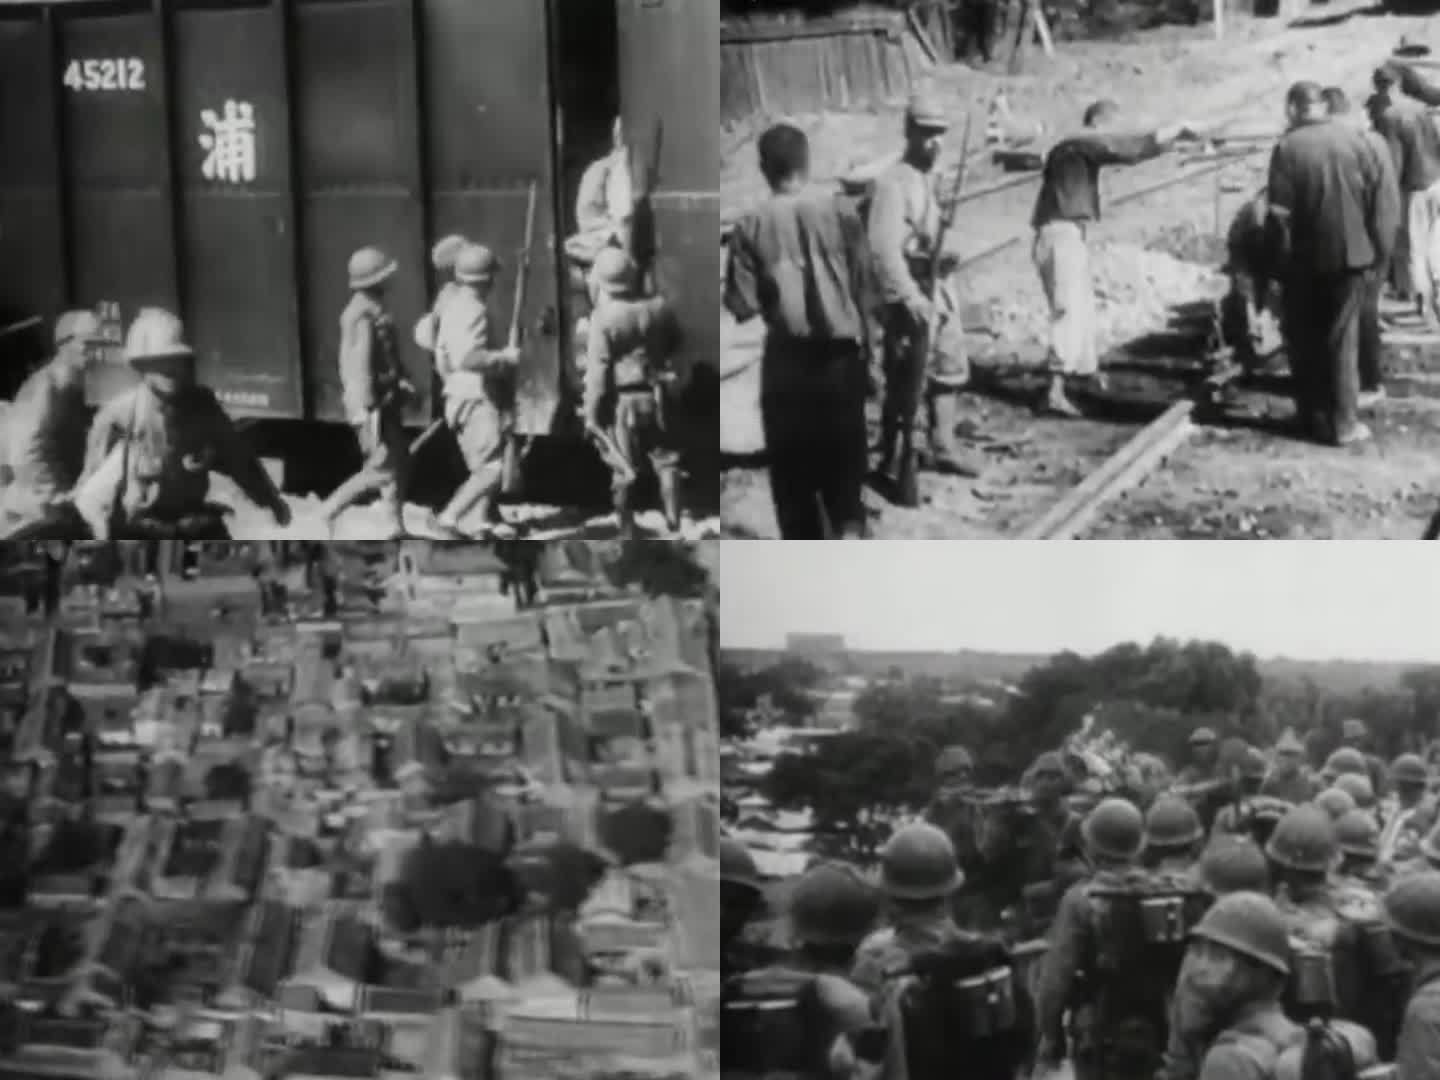 侵华日军  破坏日军铁路 日军抢修铁路